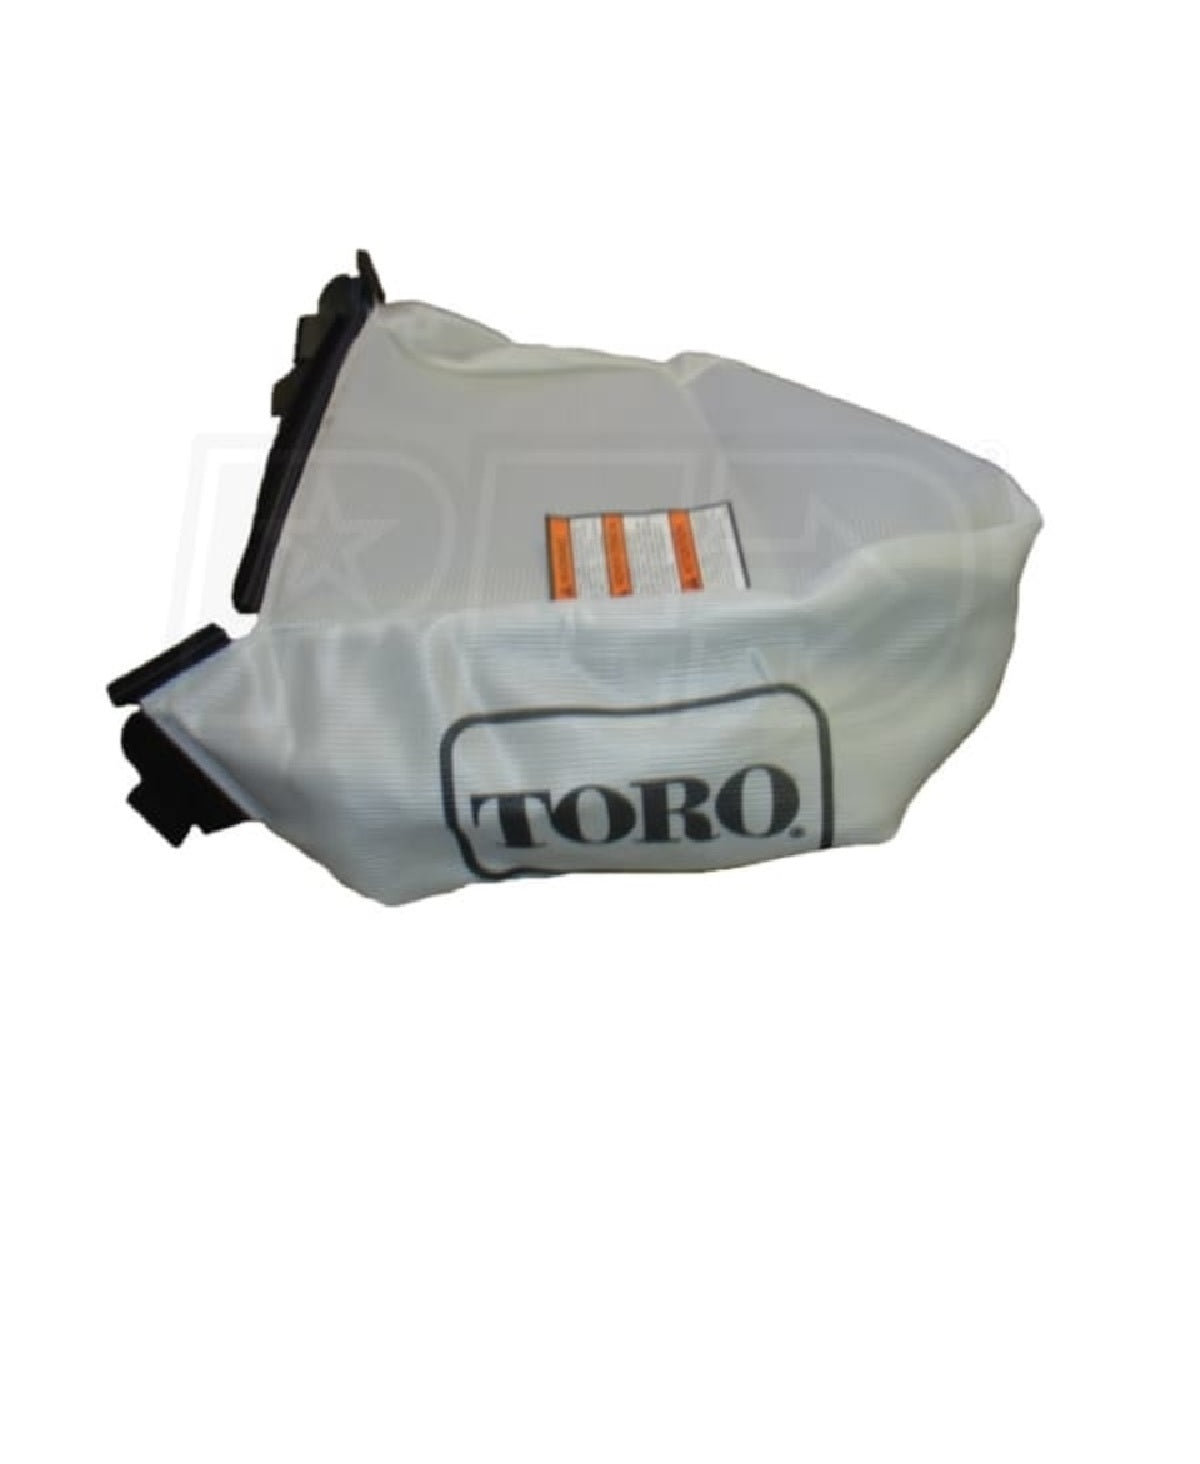 Toro 59305 Rear Bagger Kit For FWD, 22"